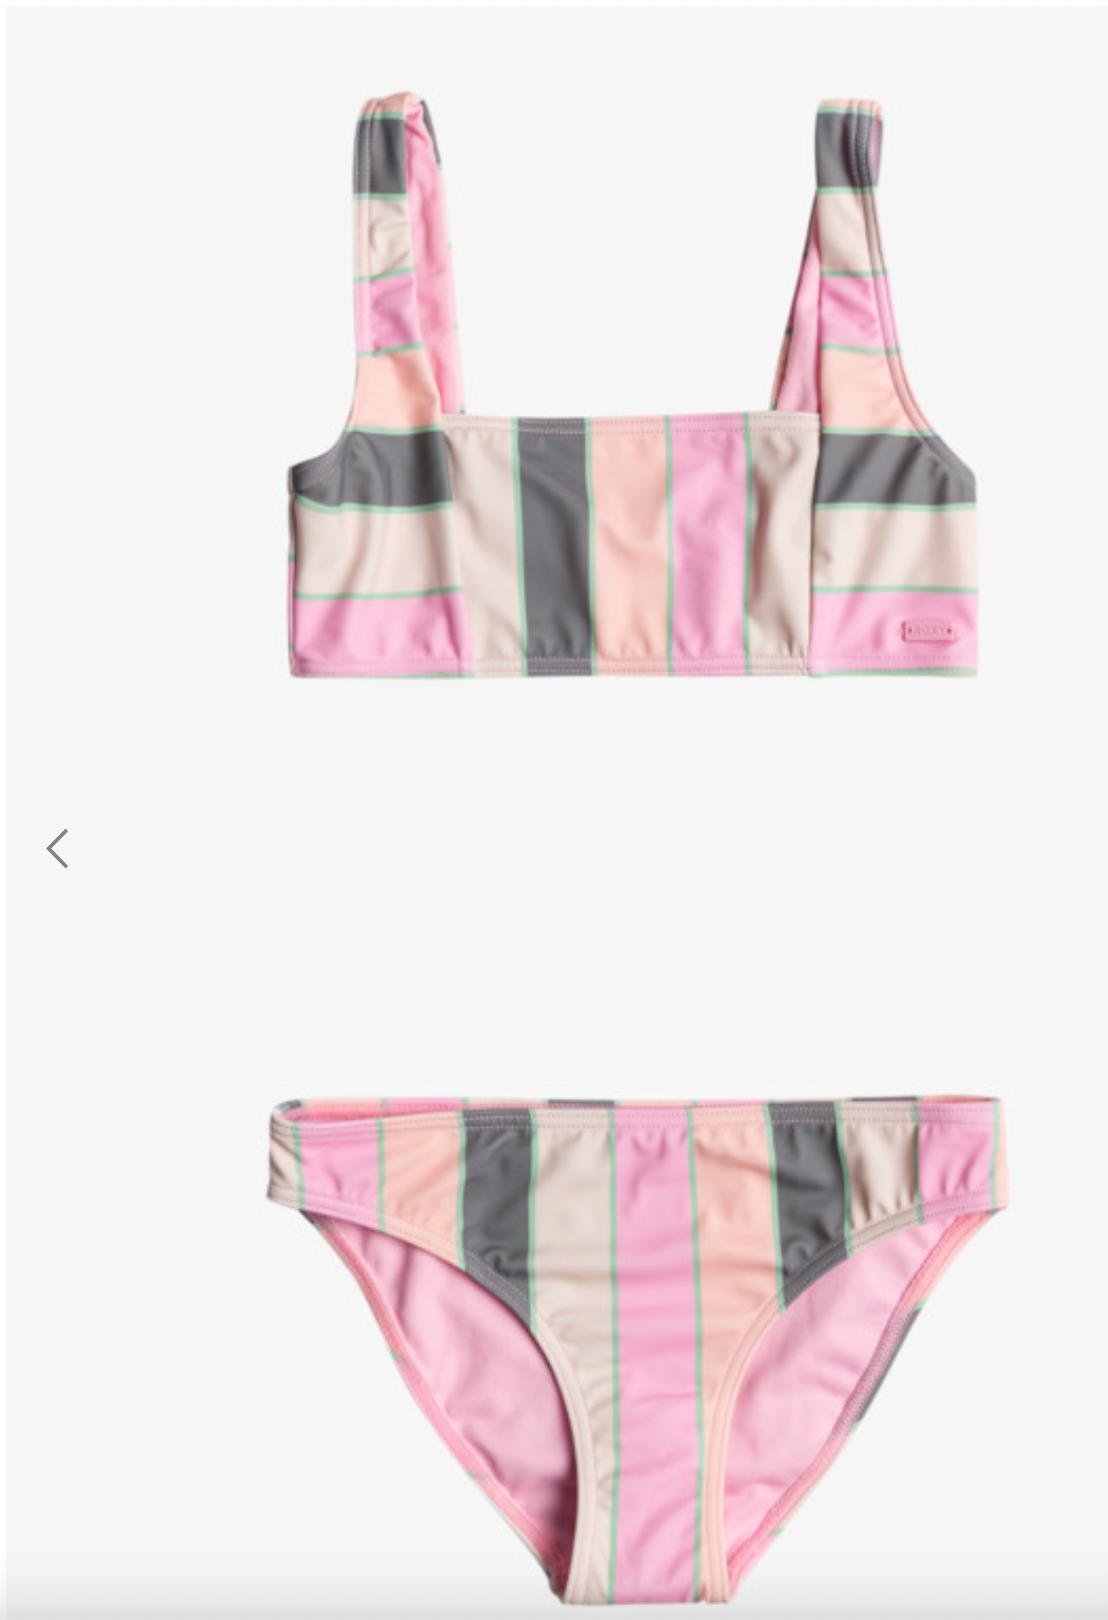 ROXY Very Vista - Bralette Two-Piece Bikini Set for Girls 7-16